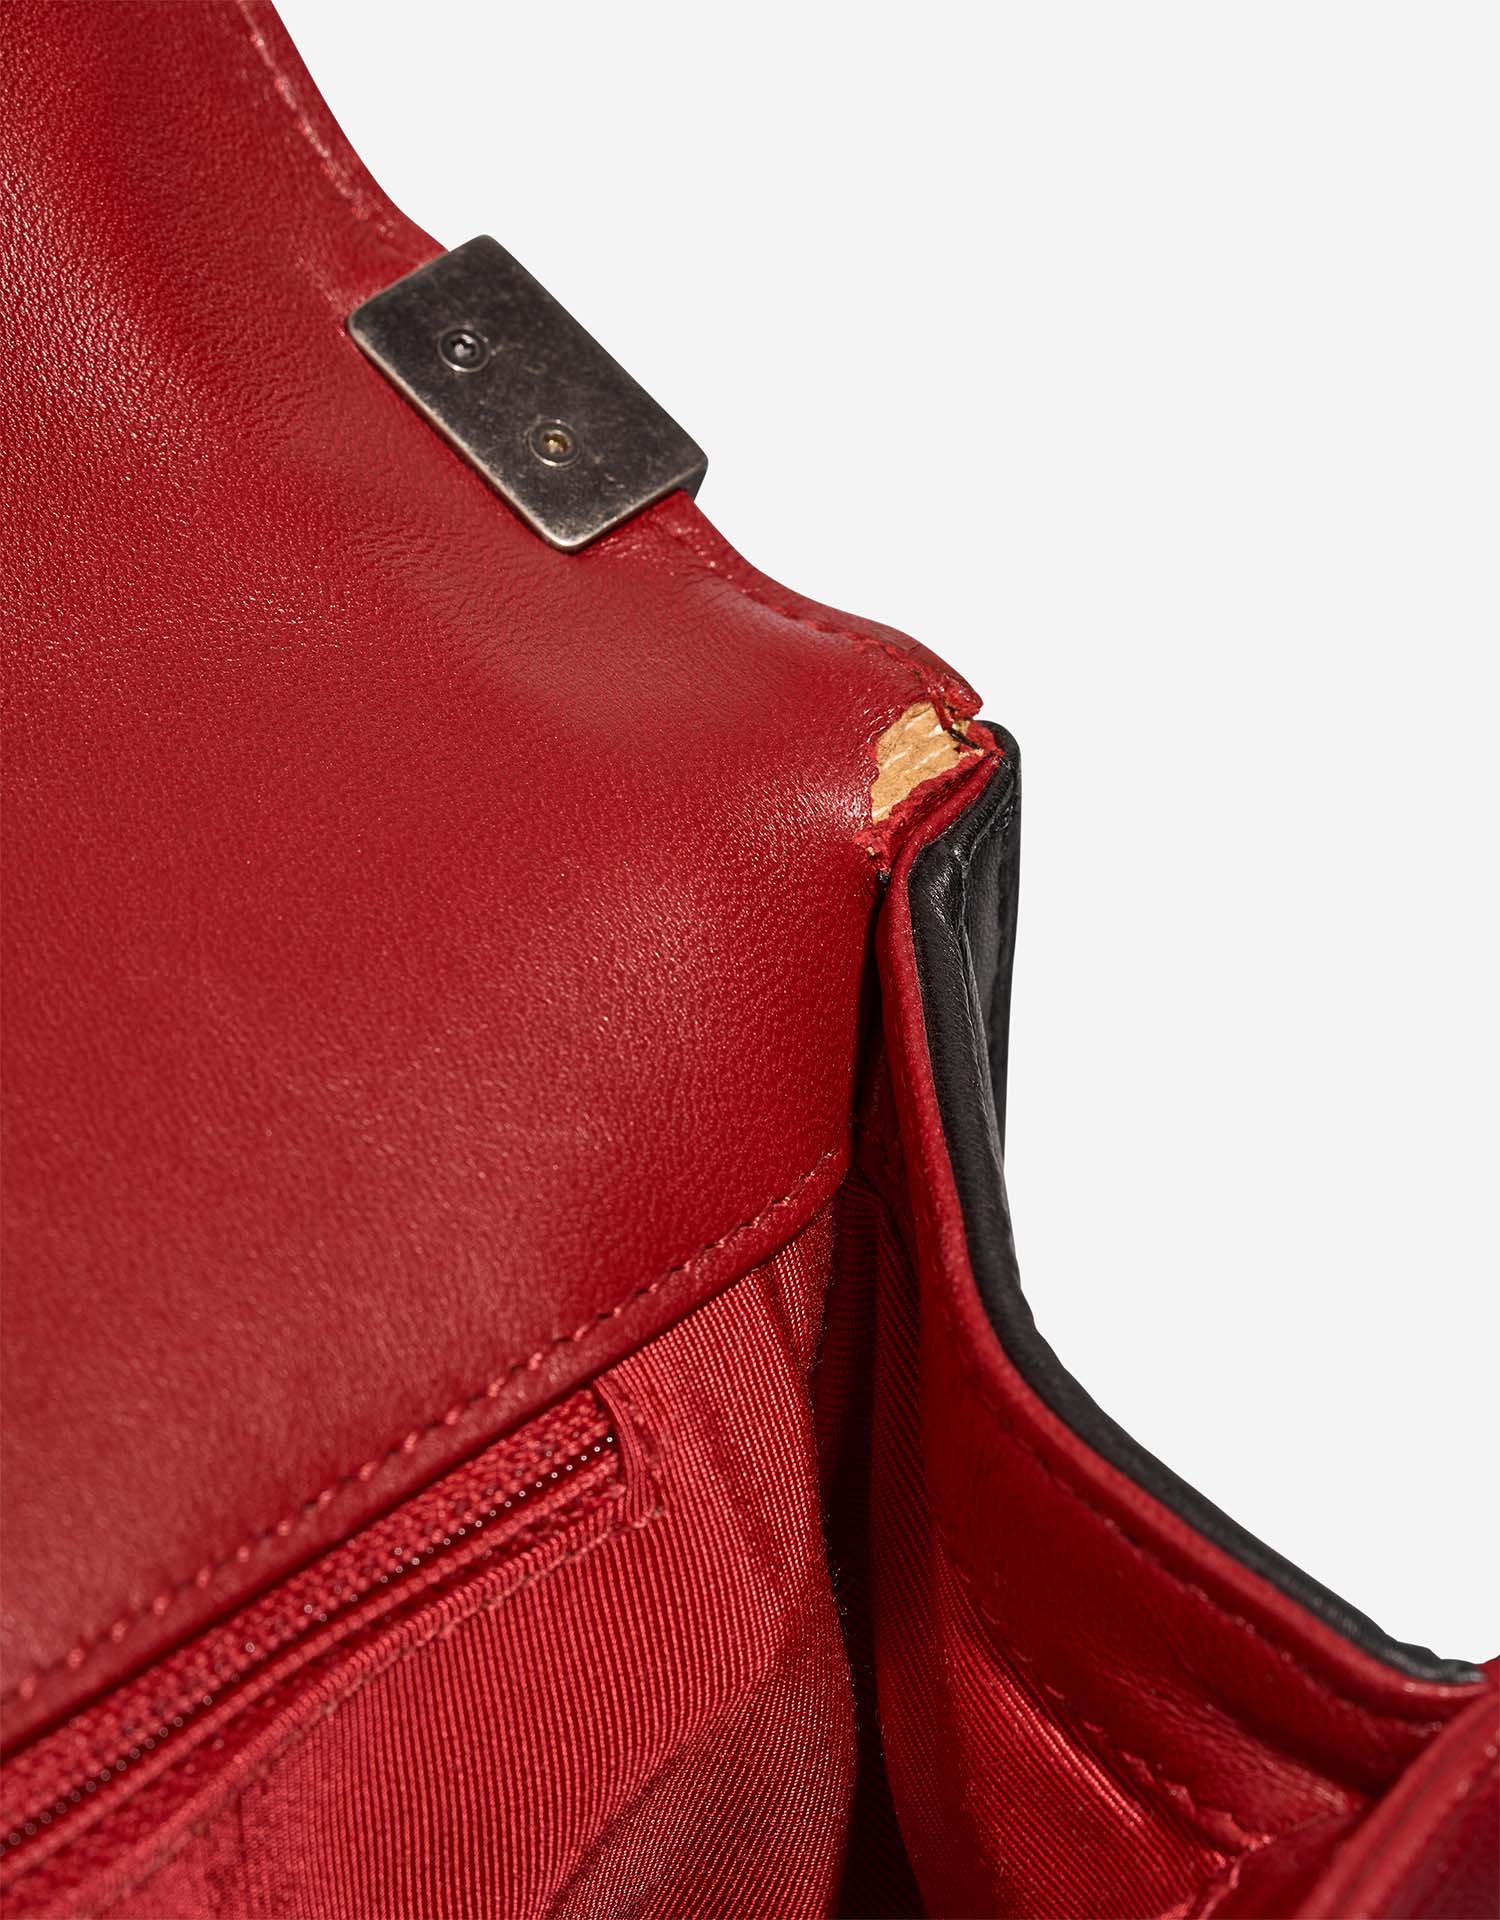 Chanel Boy Large Schwarz-Rot Gebrauchsspuren | Verkaufen Sie Ihre Designer-Tasche auf Saclab.com